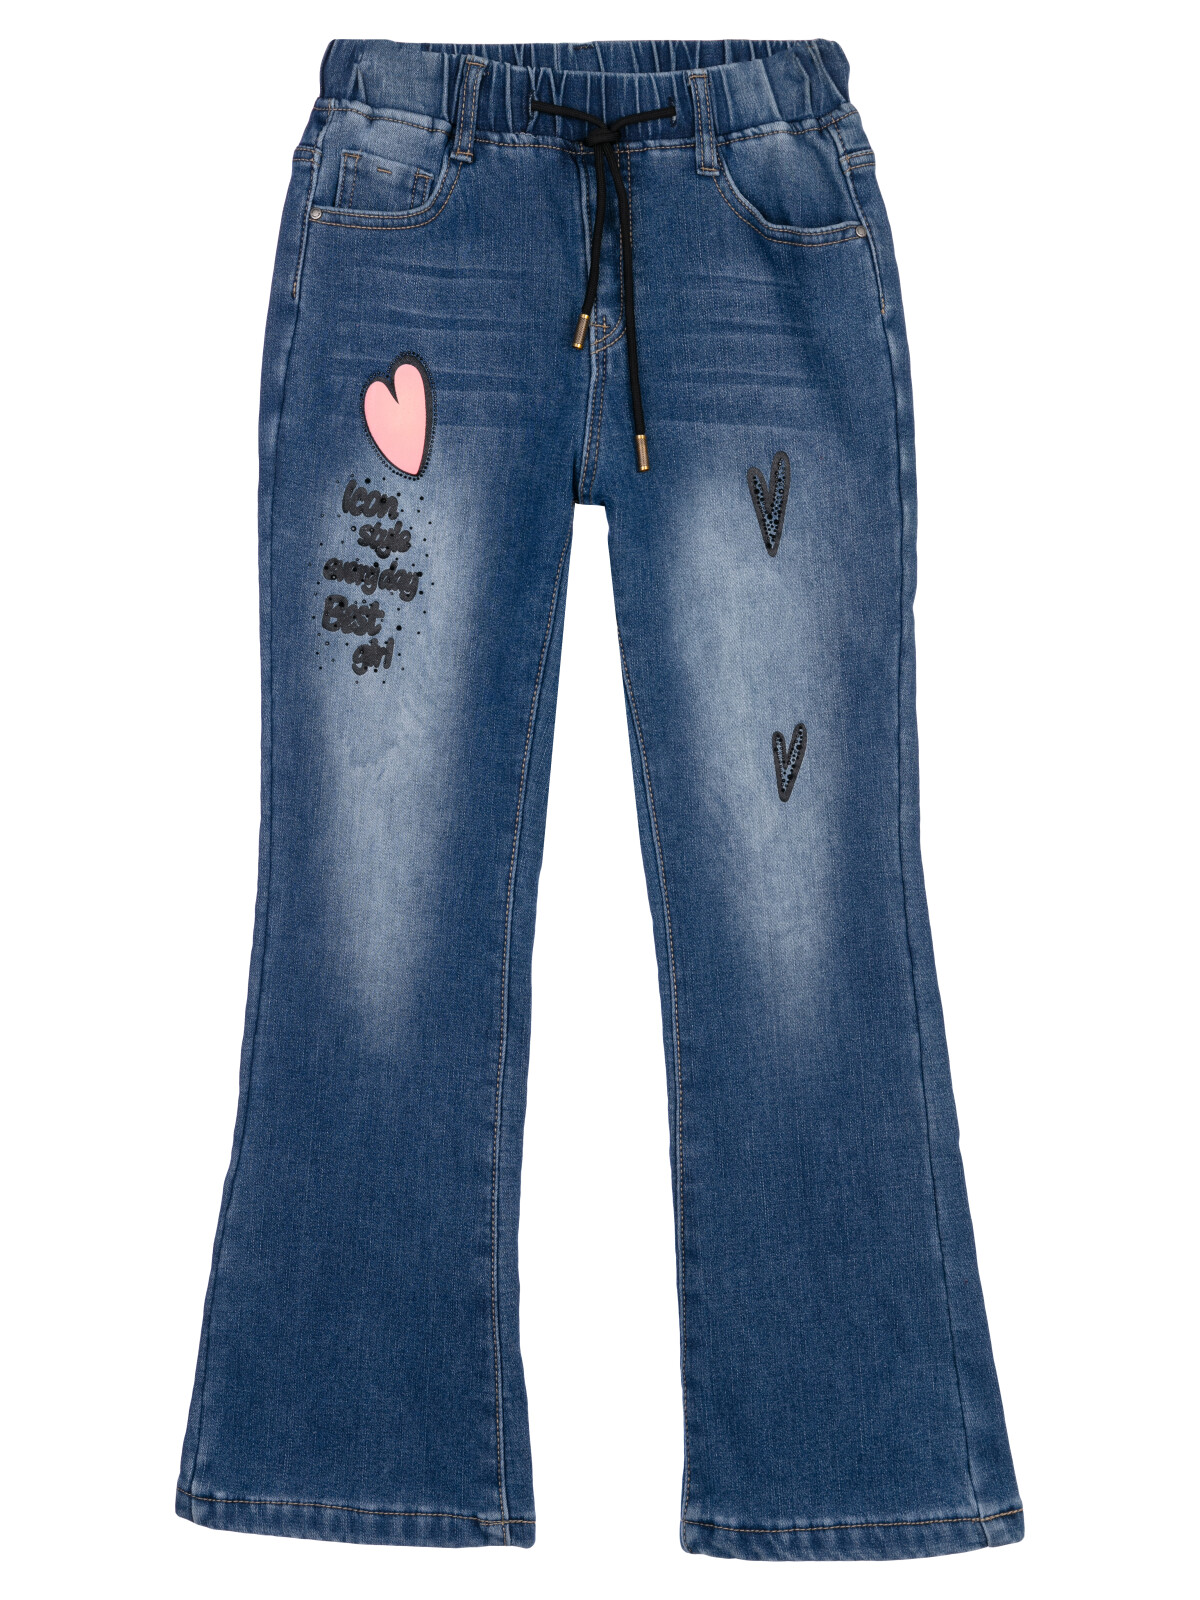 Брюки текстильные джинсовые утепленные флисом для девочек PlayToday, синий, 128